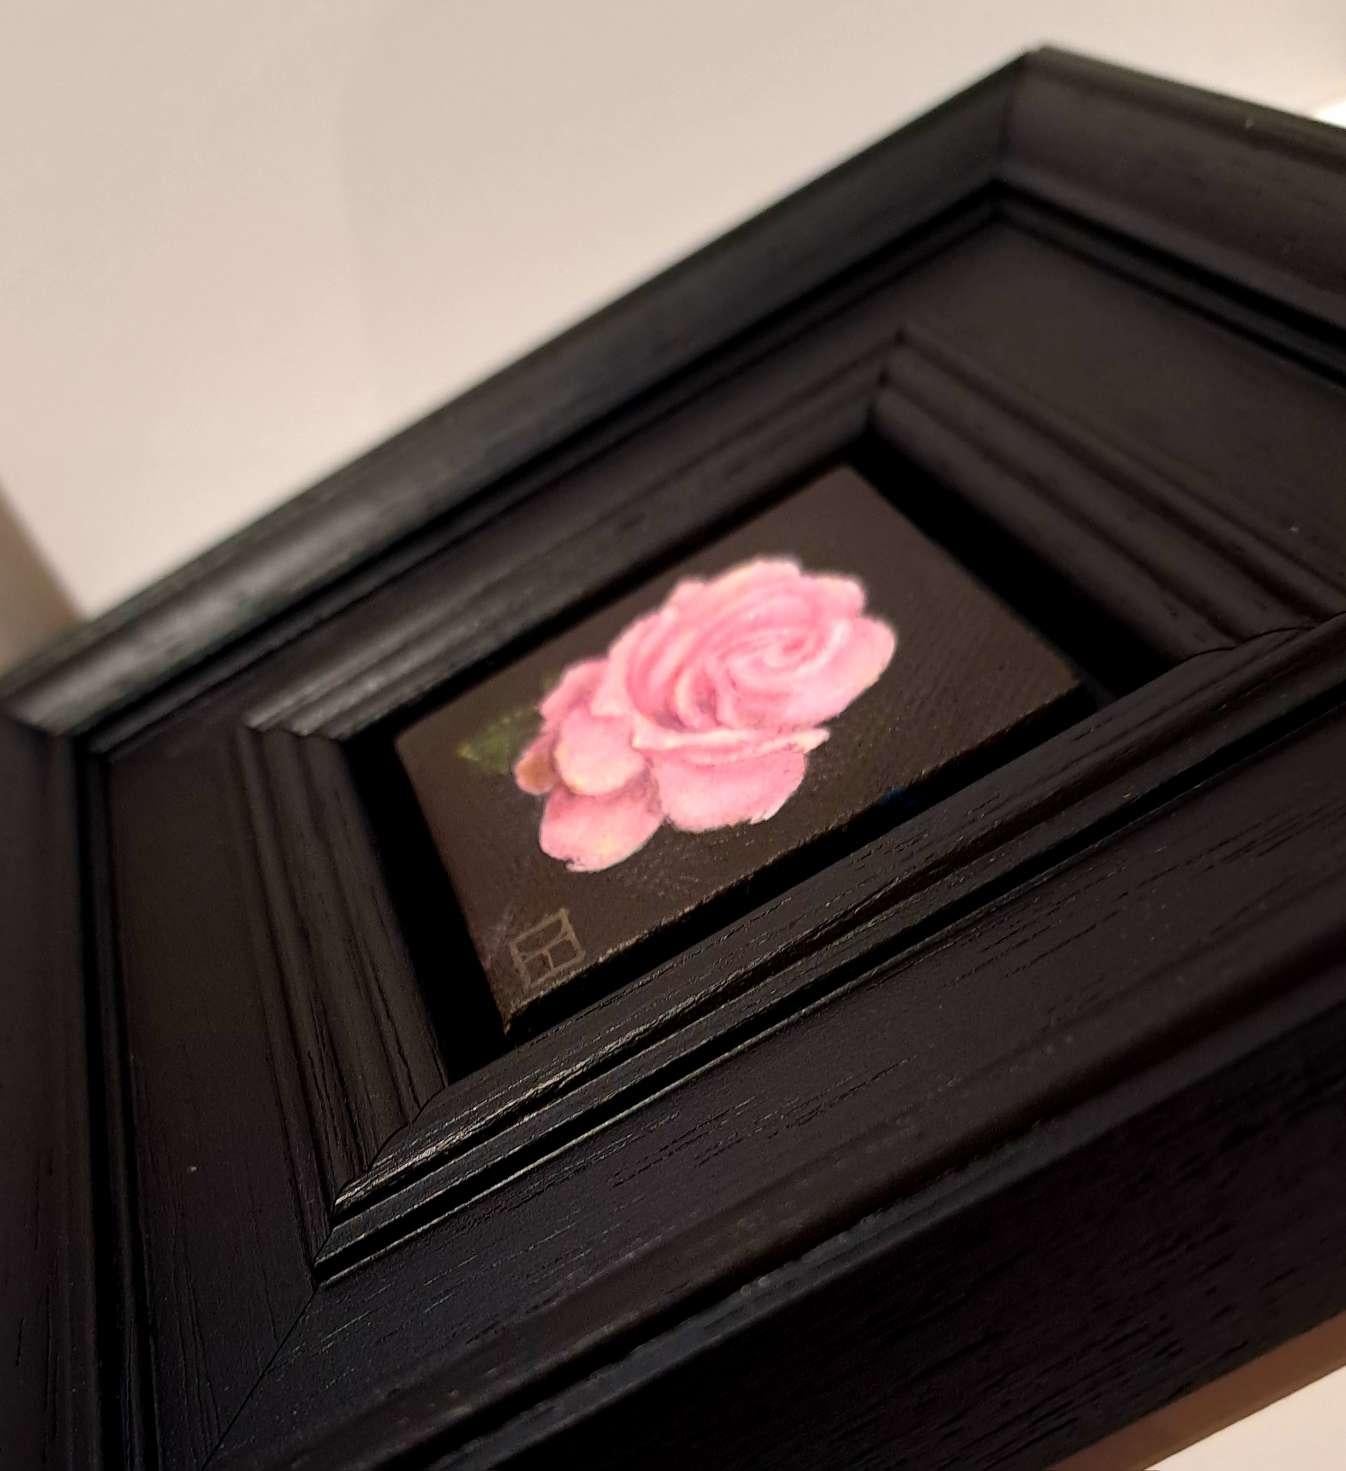 Pocket Pink Rose with Leaf ist ein Original-Ölgemälde von Dani Humberstone als Teil ihrer Pocket Painting-Serie, die realistische Ölgemälde in kleinem Maßstab mit einer Anspielung auf die barocke Stilllebenmalerei umfasst. Die Gemälde sind in einen